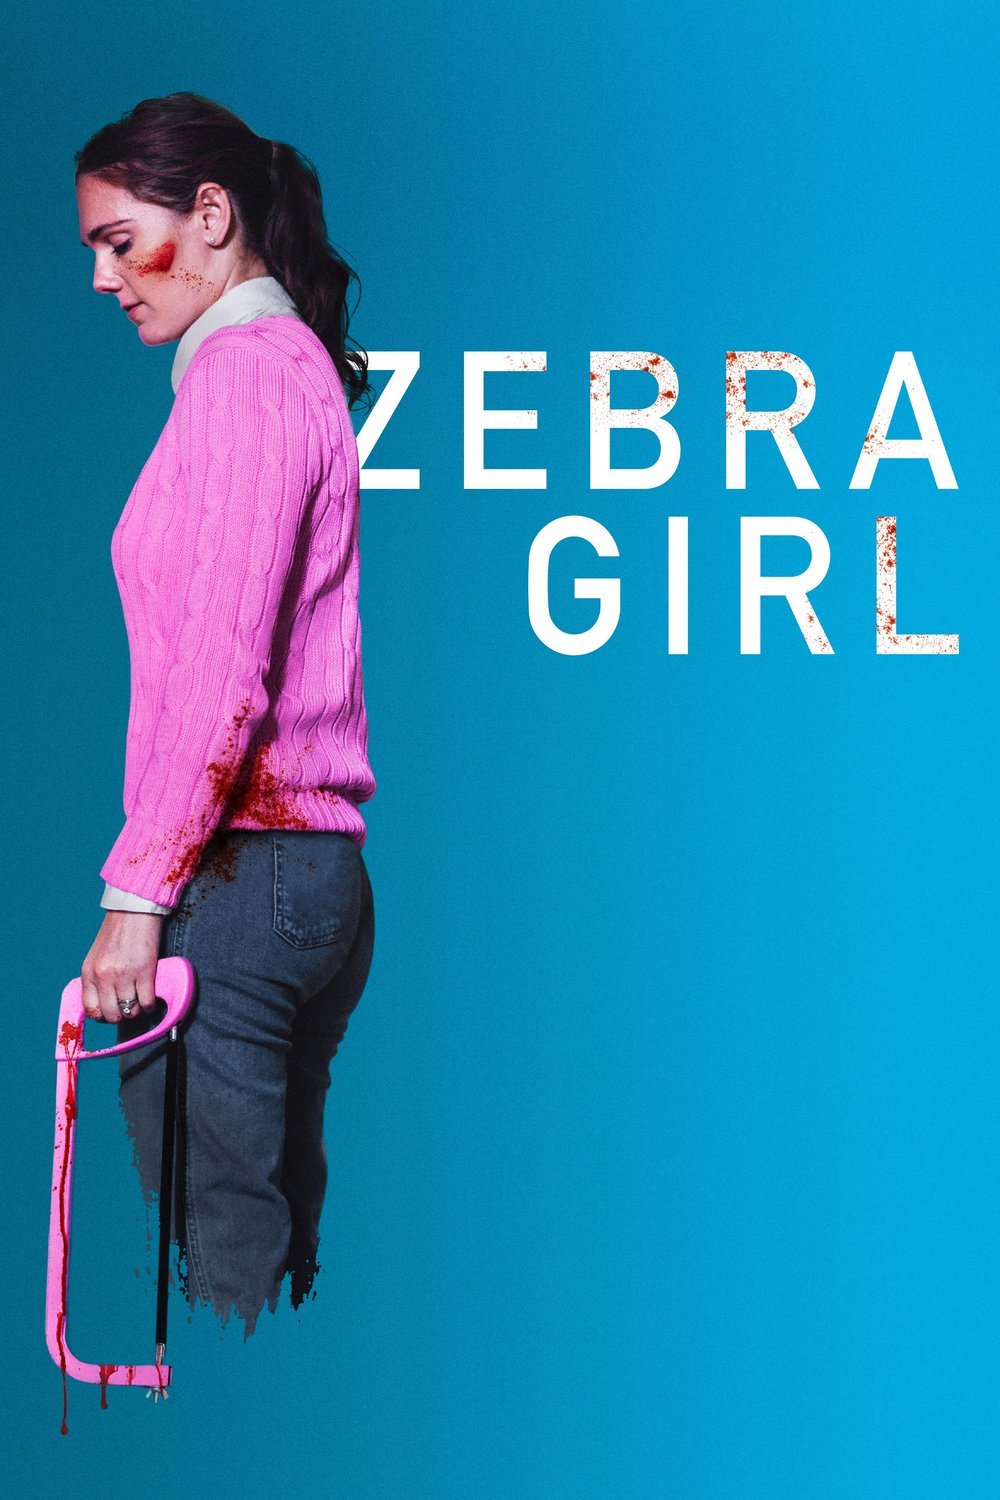 Poster of the movie Zebra Girl